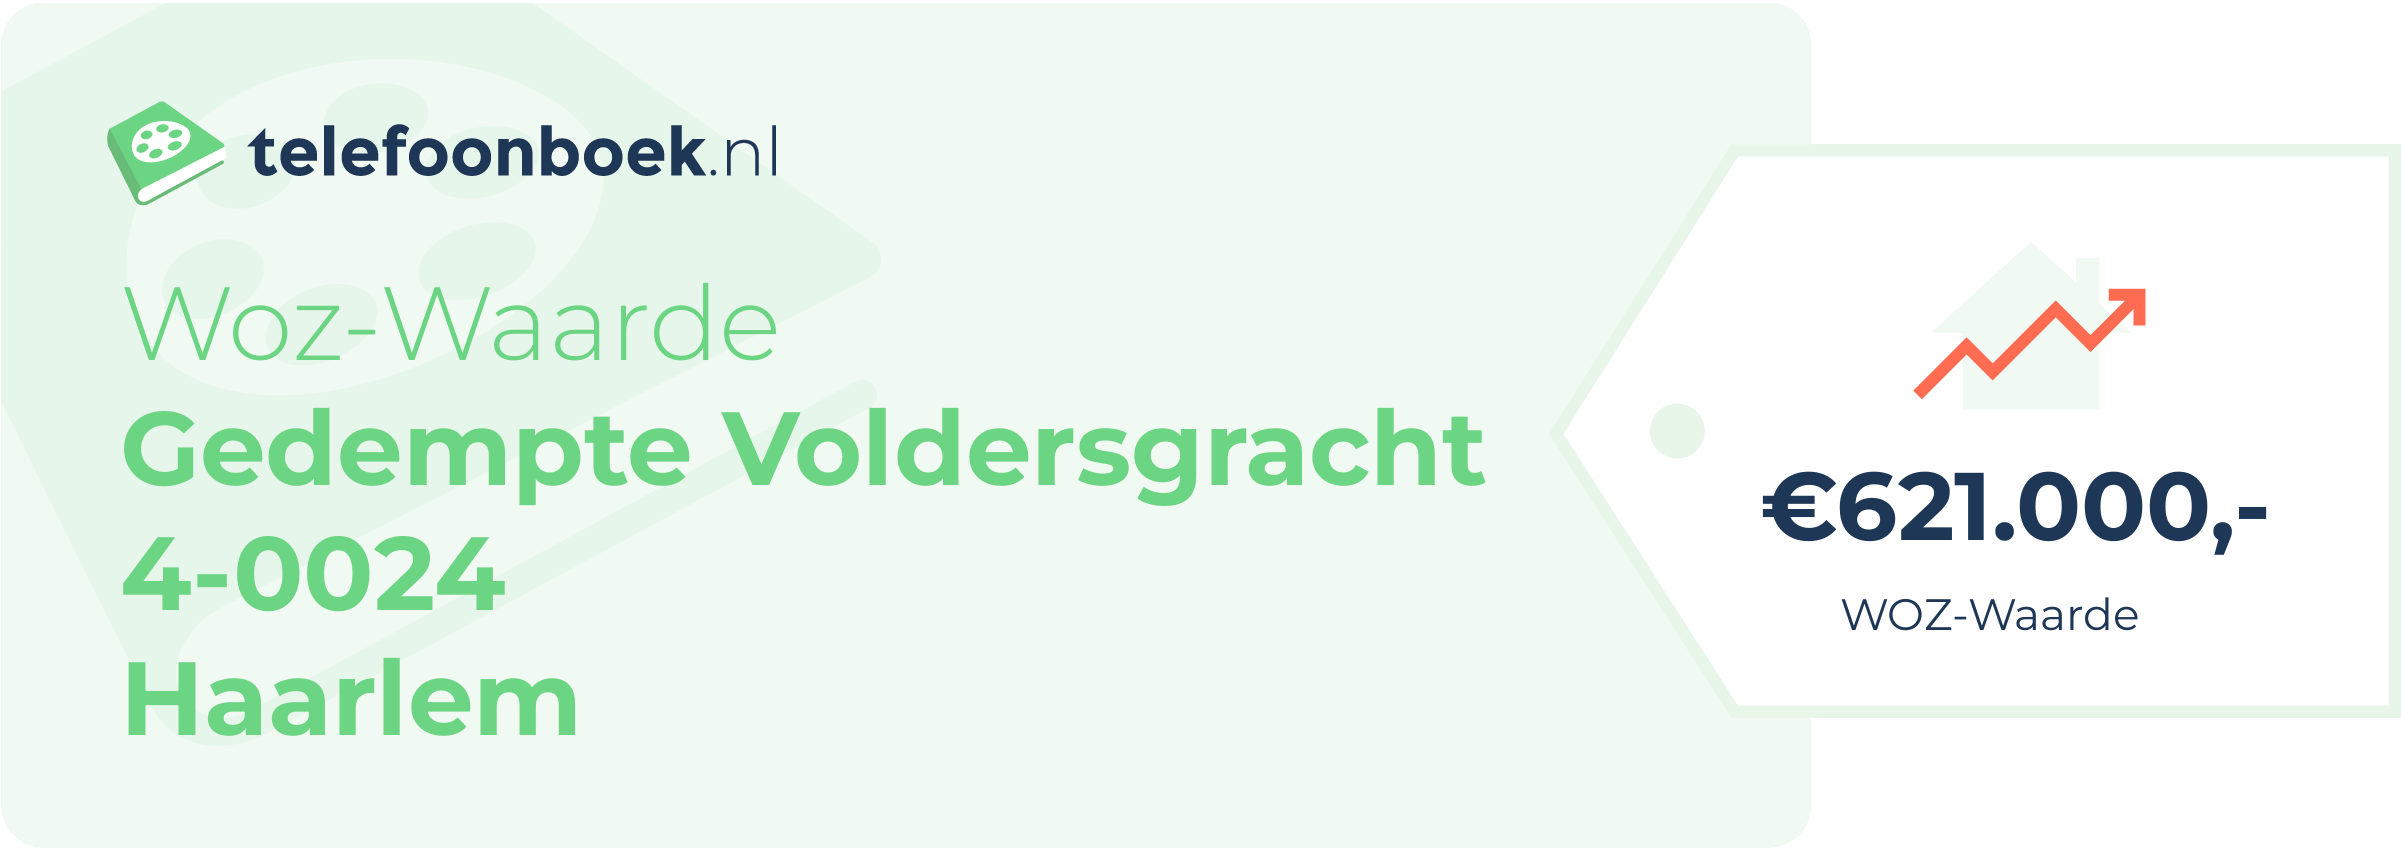 WOZ-waarde Gedempte Voldersgracht 4-0024 Haarlem